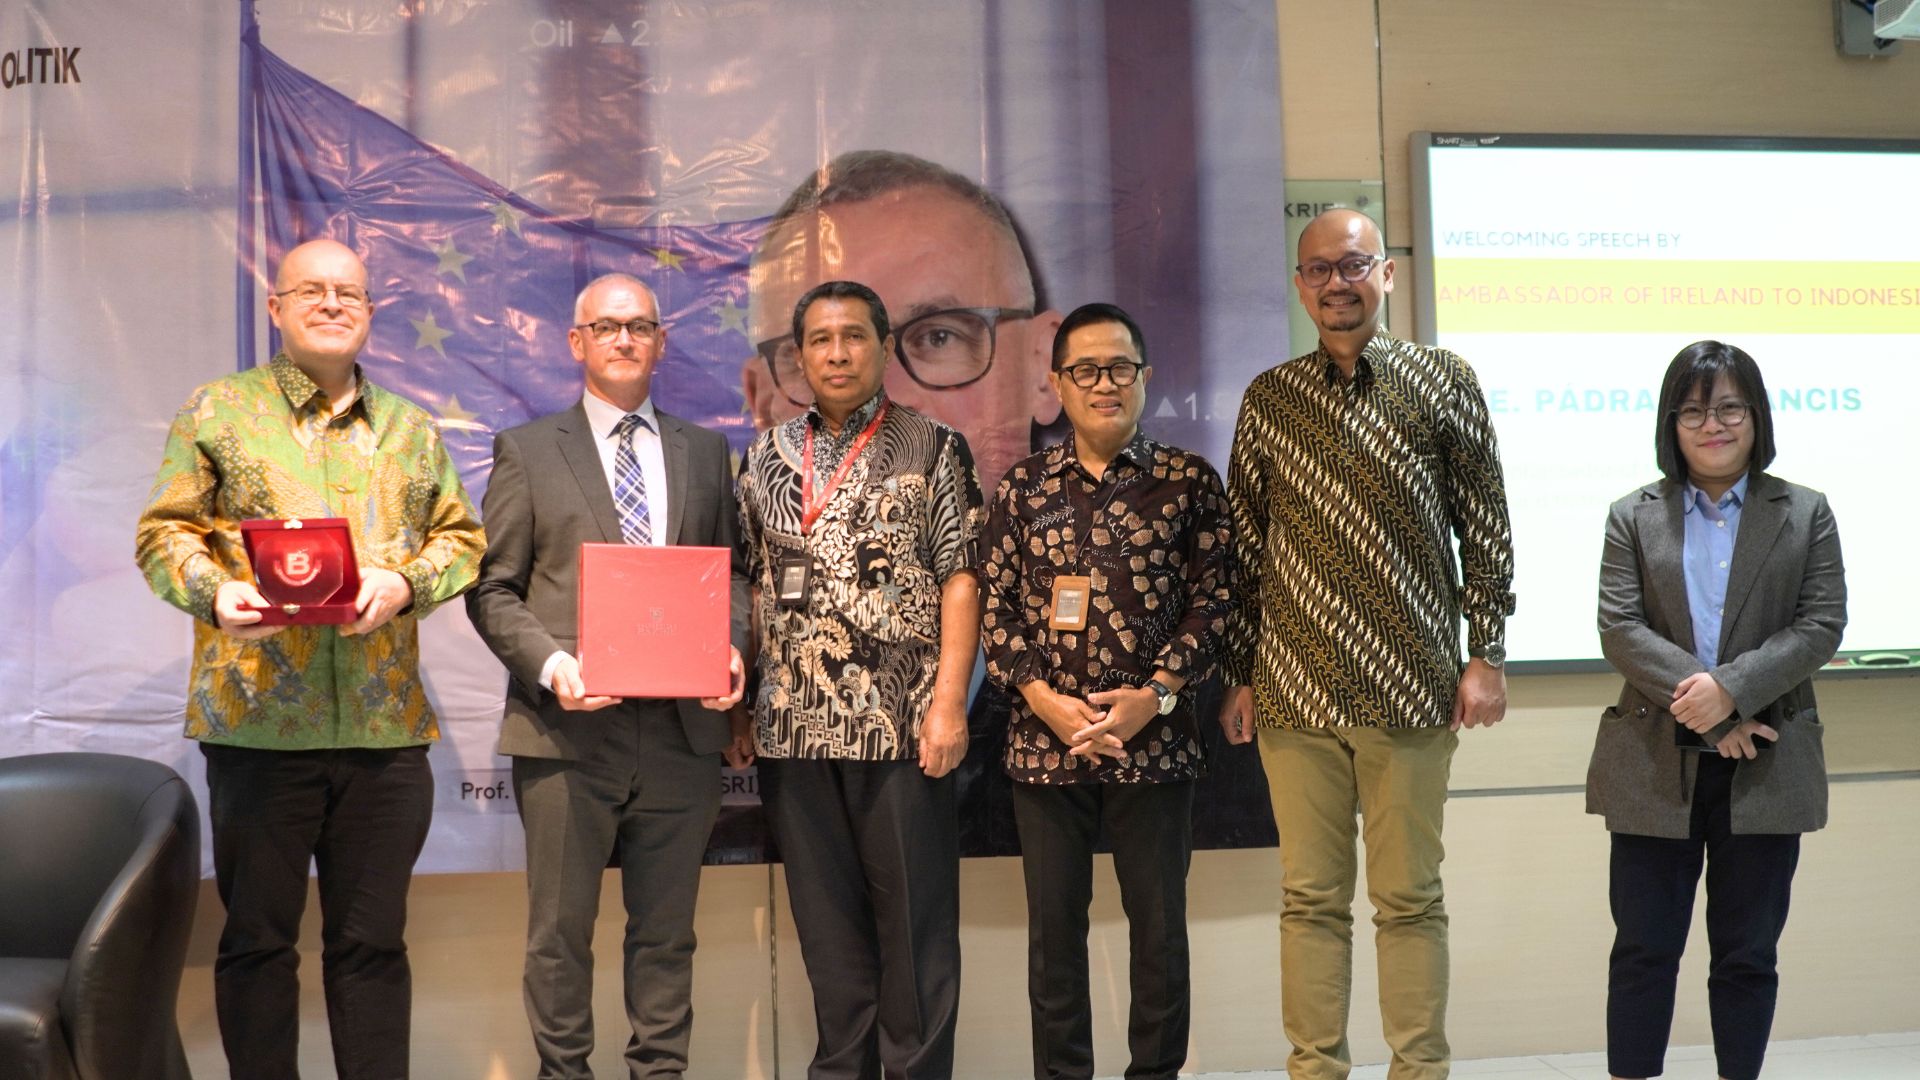 Mengulik Keberhasilan Transformasi Ekonomi Irlandia bersama Kedutaan Besar Irlandia untuk Indonesia di Universitas Bakrie